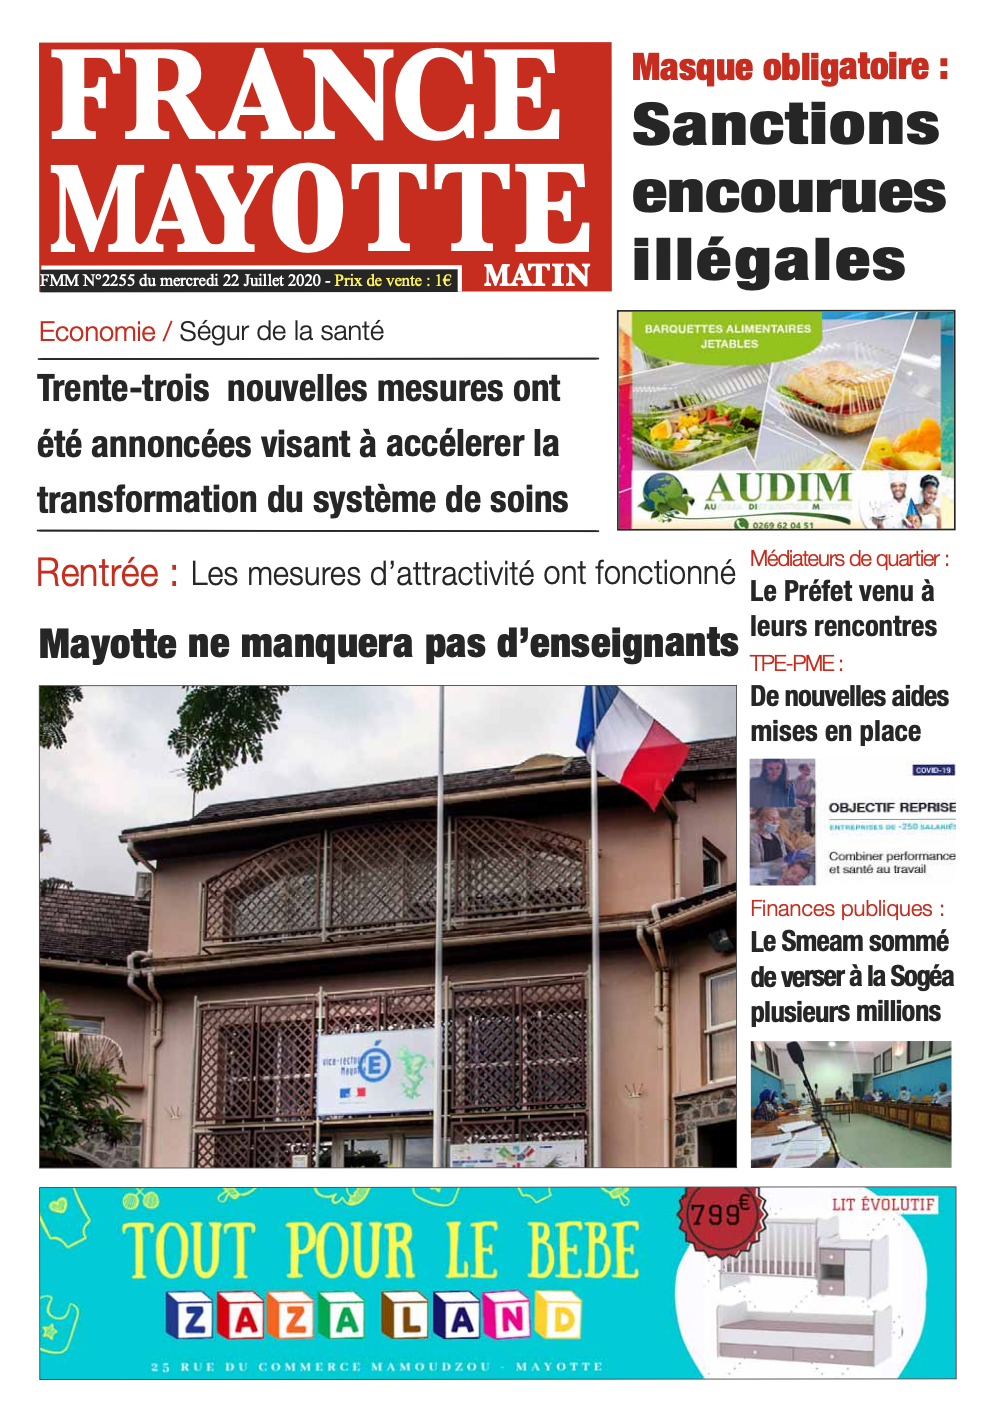 France Mayotte Mercredi 22 juillet 2020